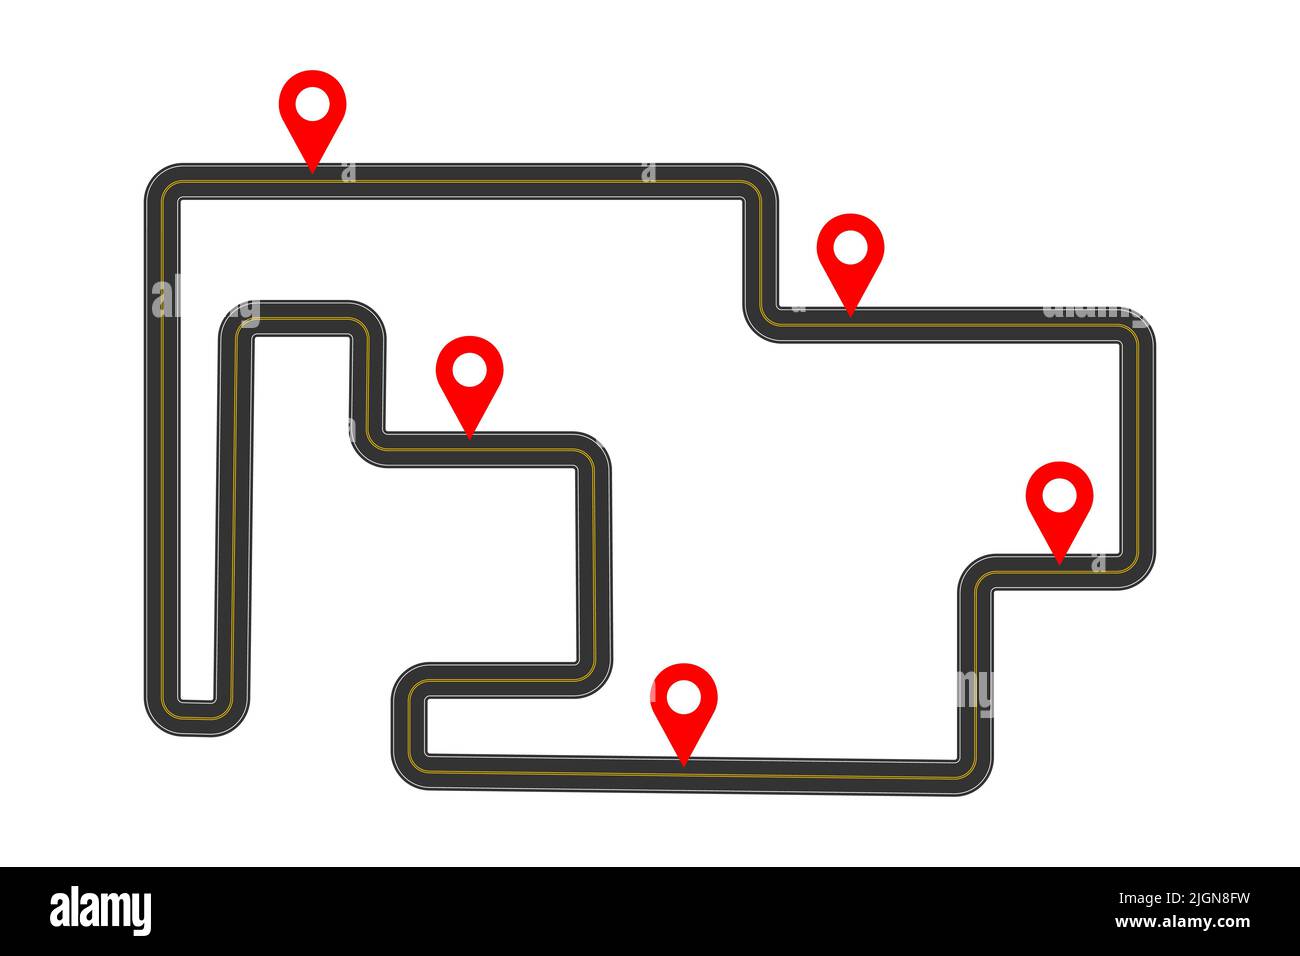 Modello di roadmap con cartine rosse. Concetto infografico di consegna, viaggio, piano di viaggio isolato su sfondo bianco. Illustrazione piatta vettoriale. Illustrazione Vettoriale